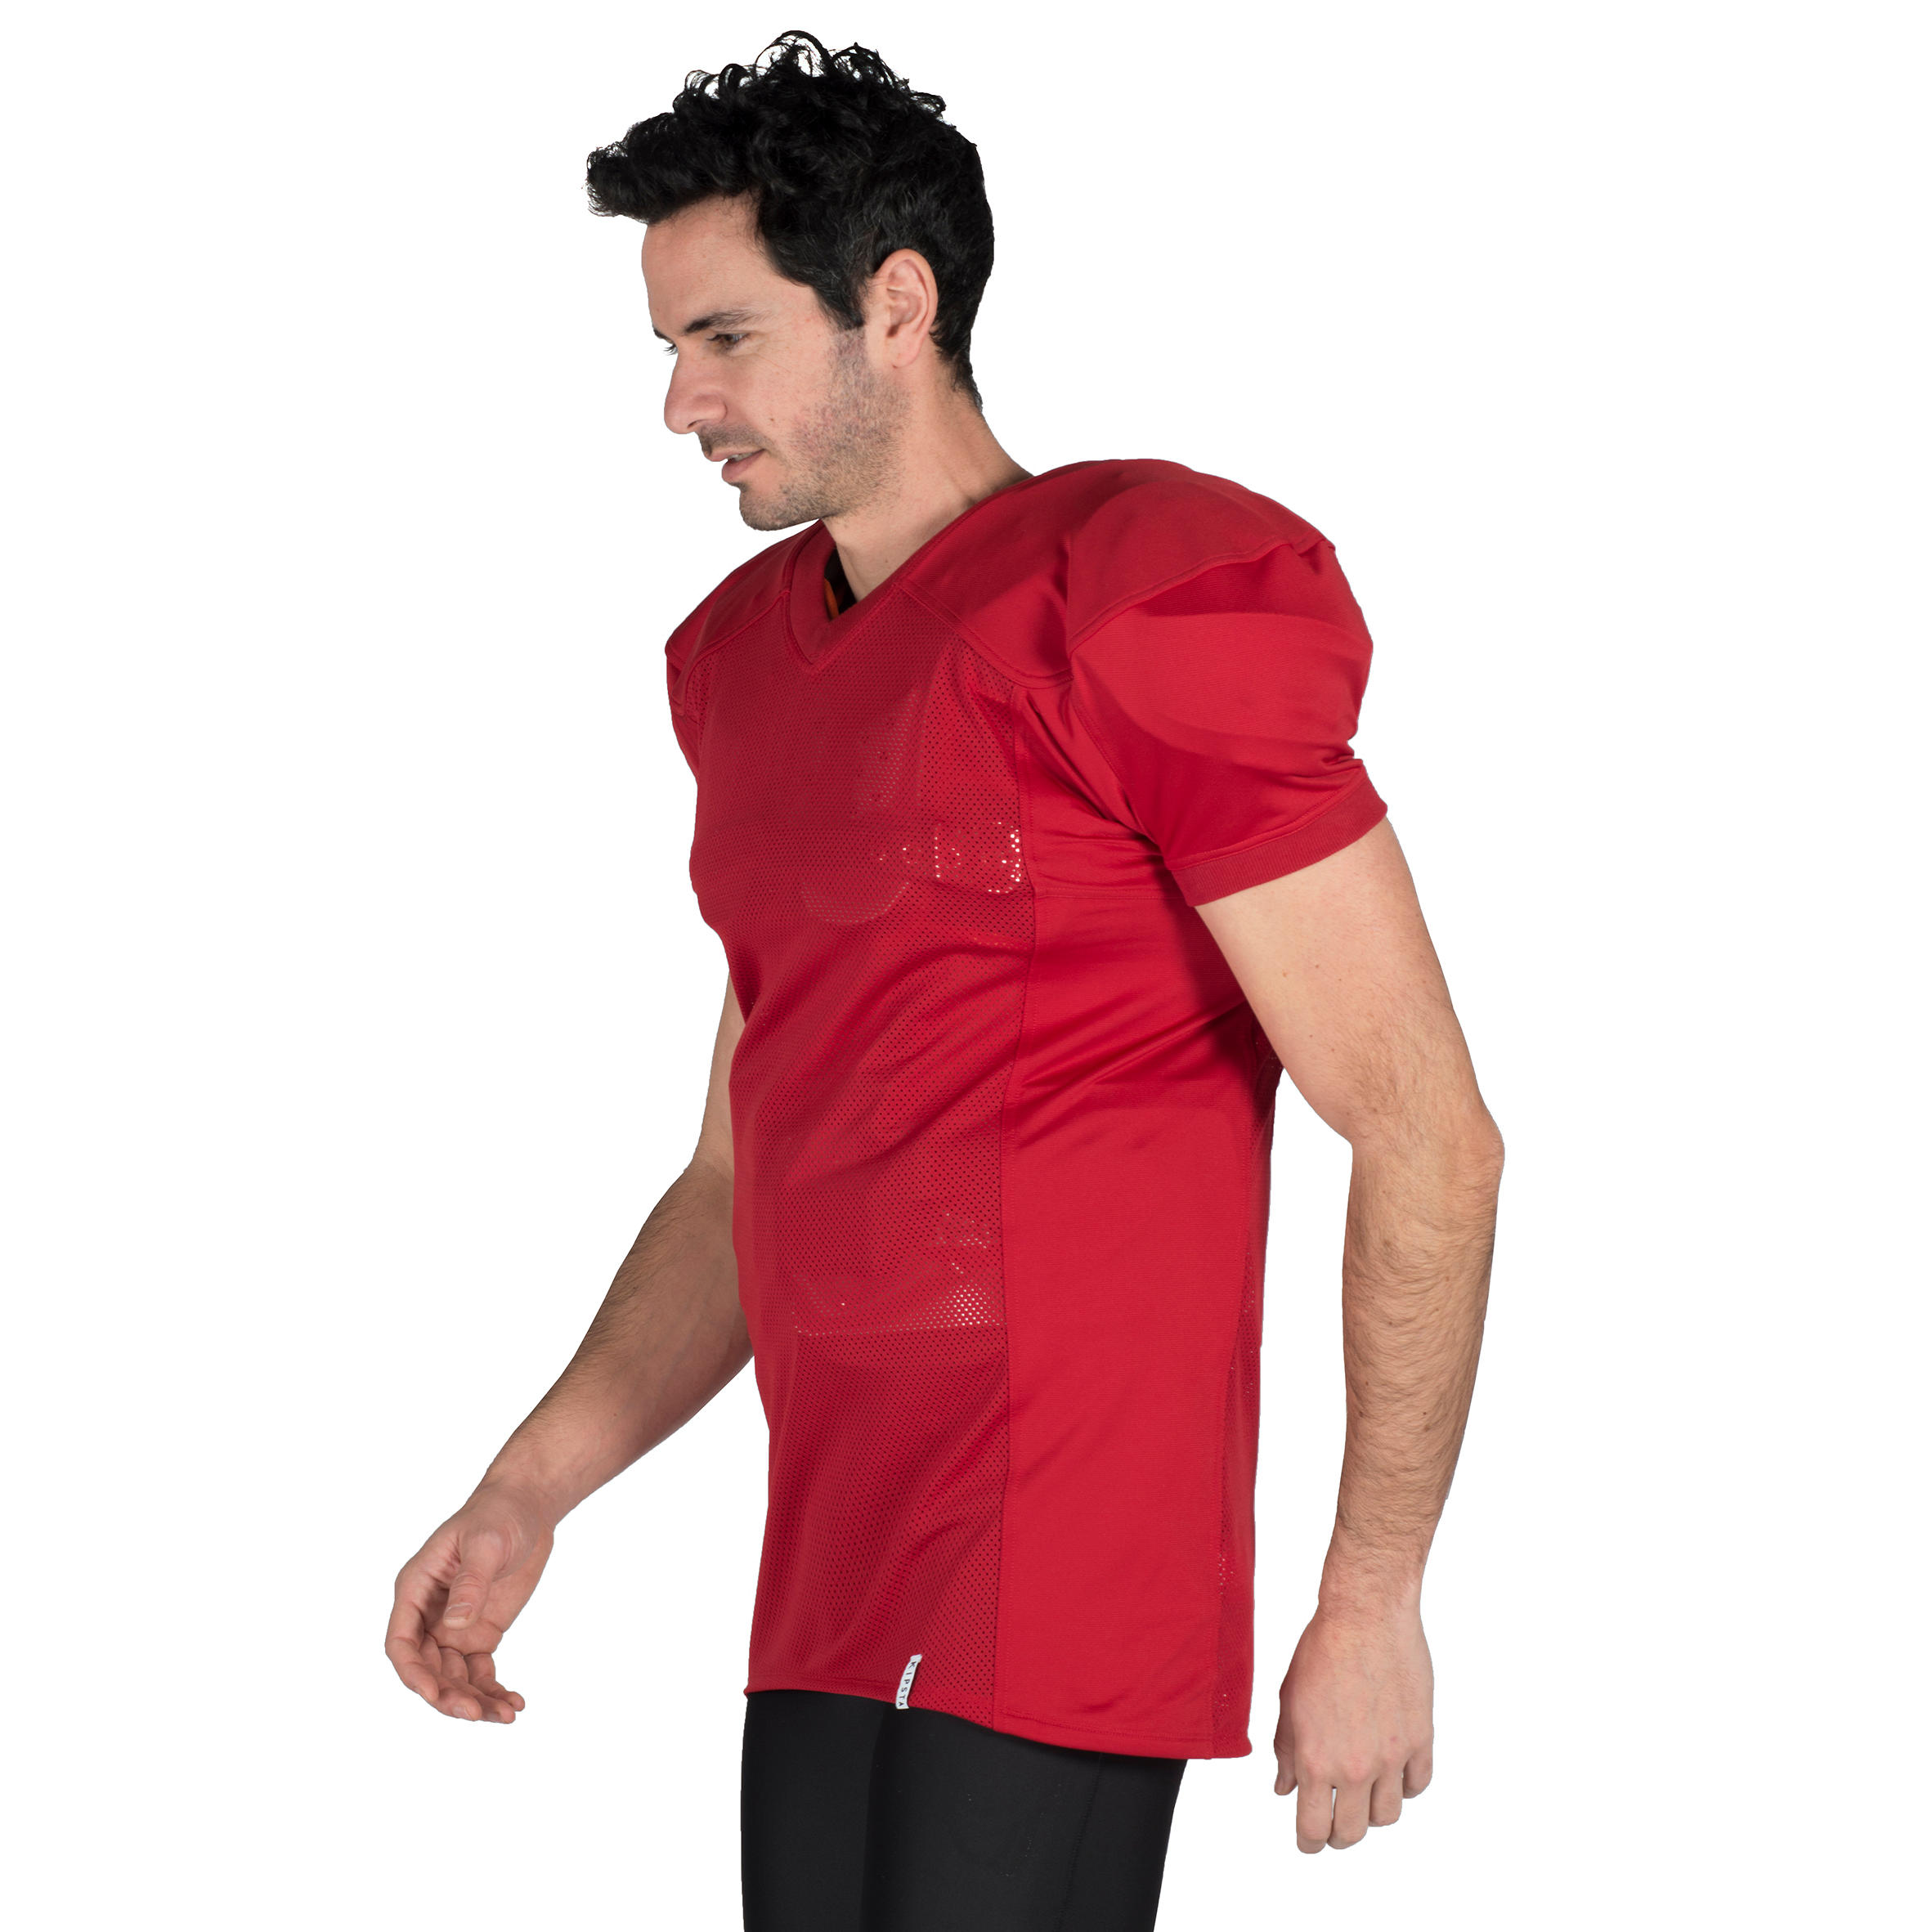 Camiseta de fútbol americano para adultos AF 550 roja